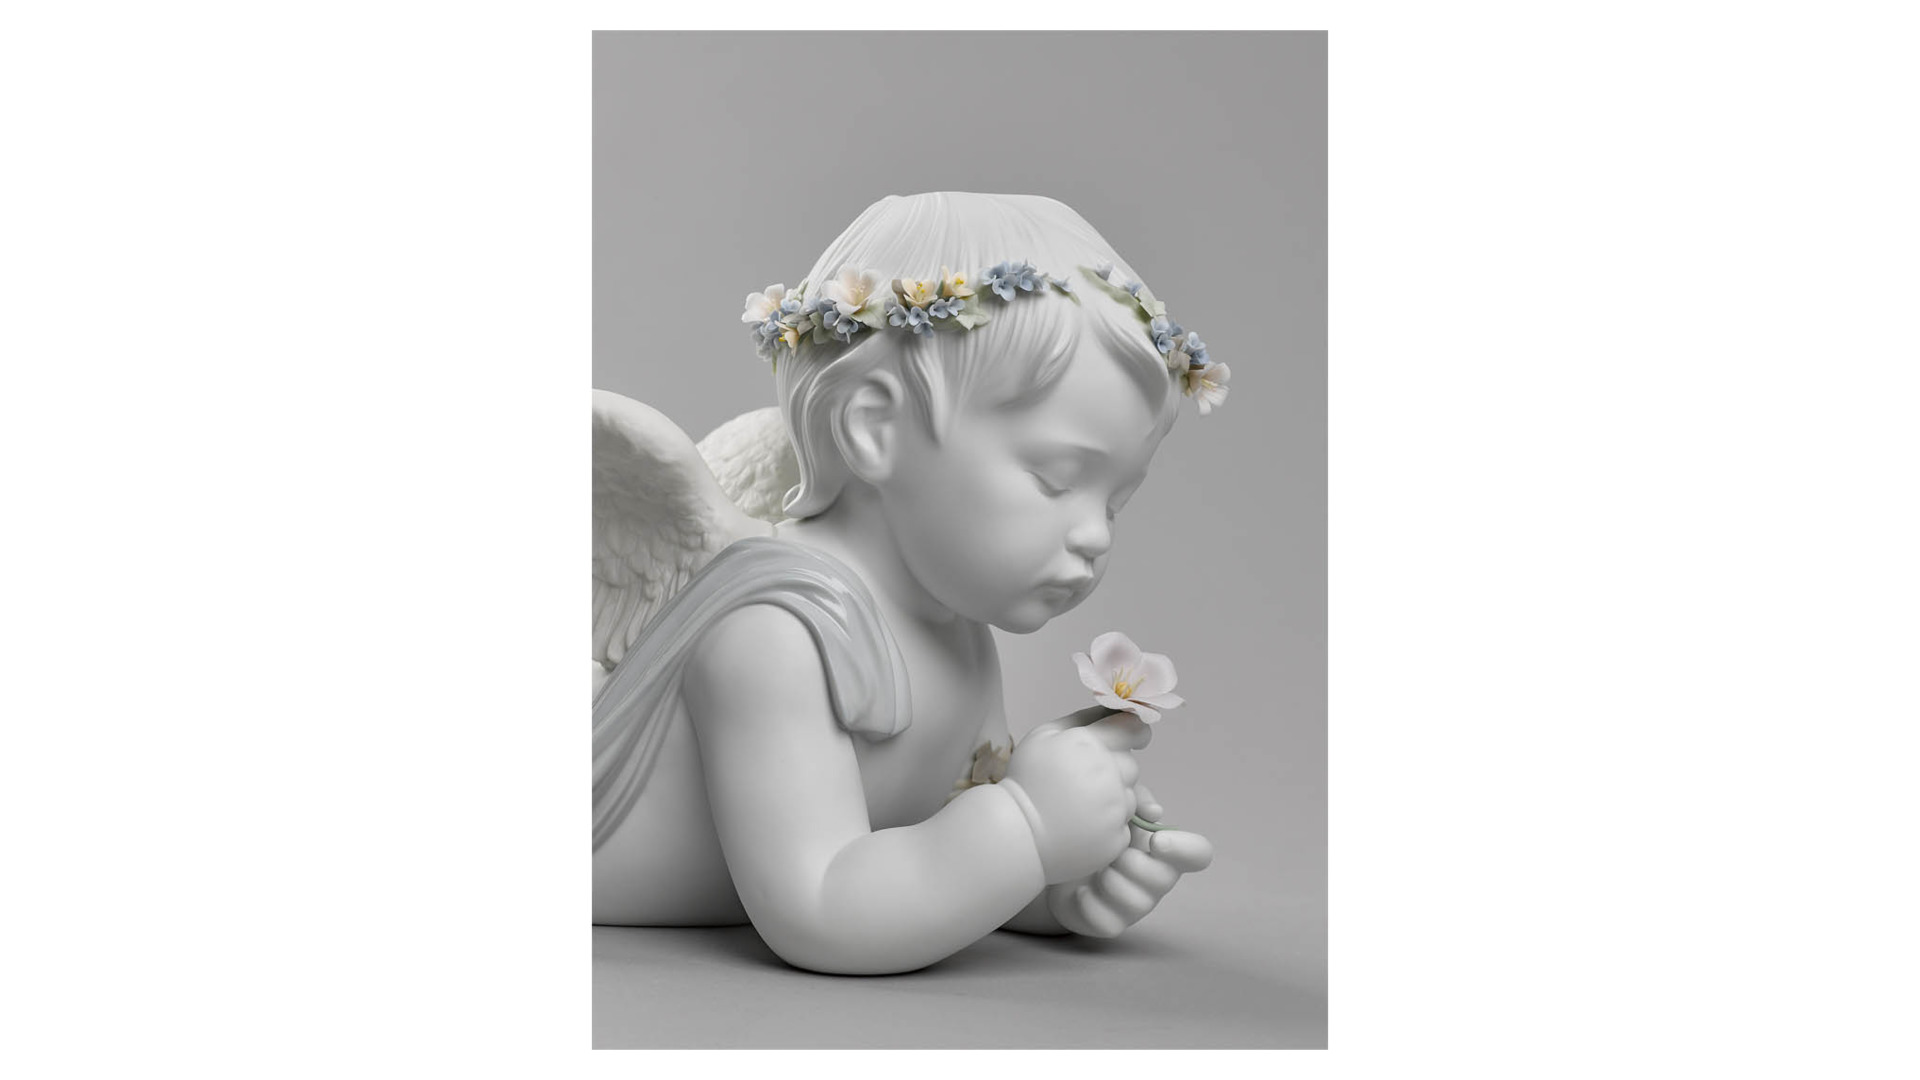 Фигурка Lladro Мой любимый ангел 49х26 см, фарфор